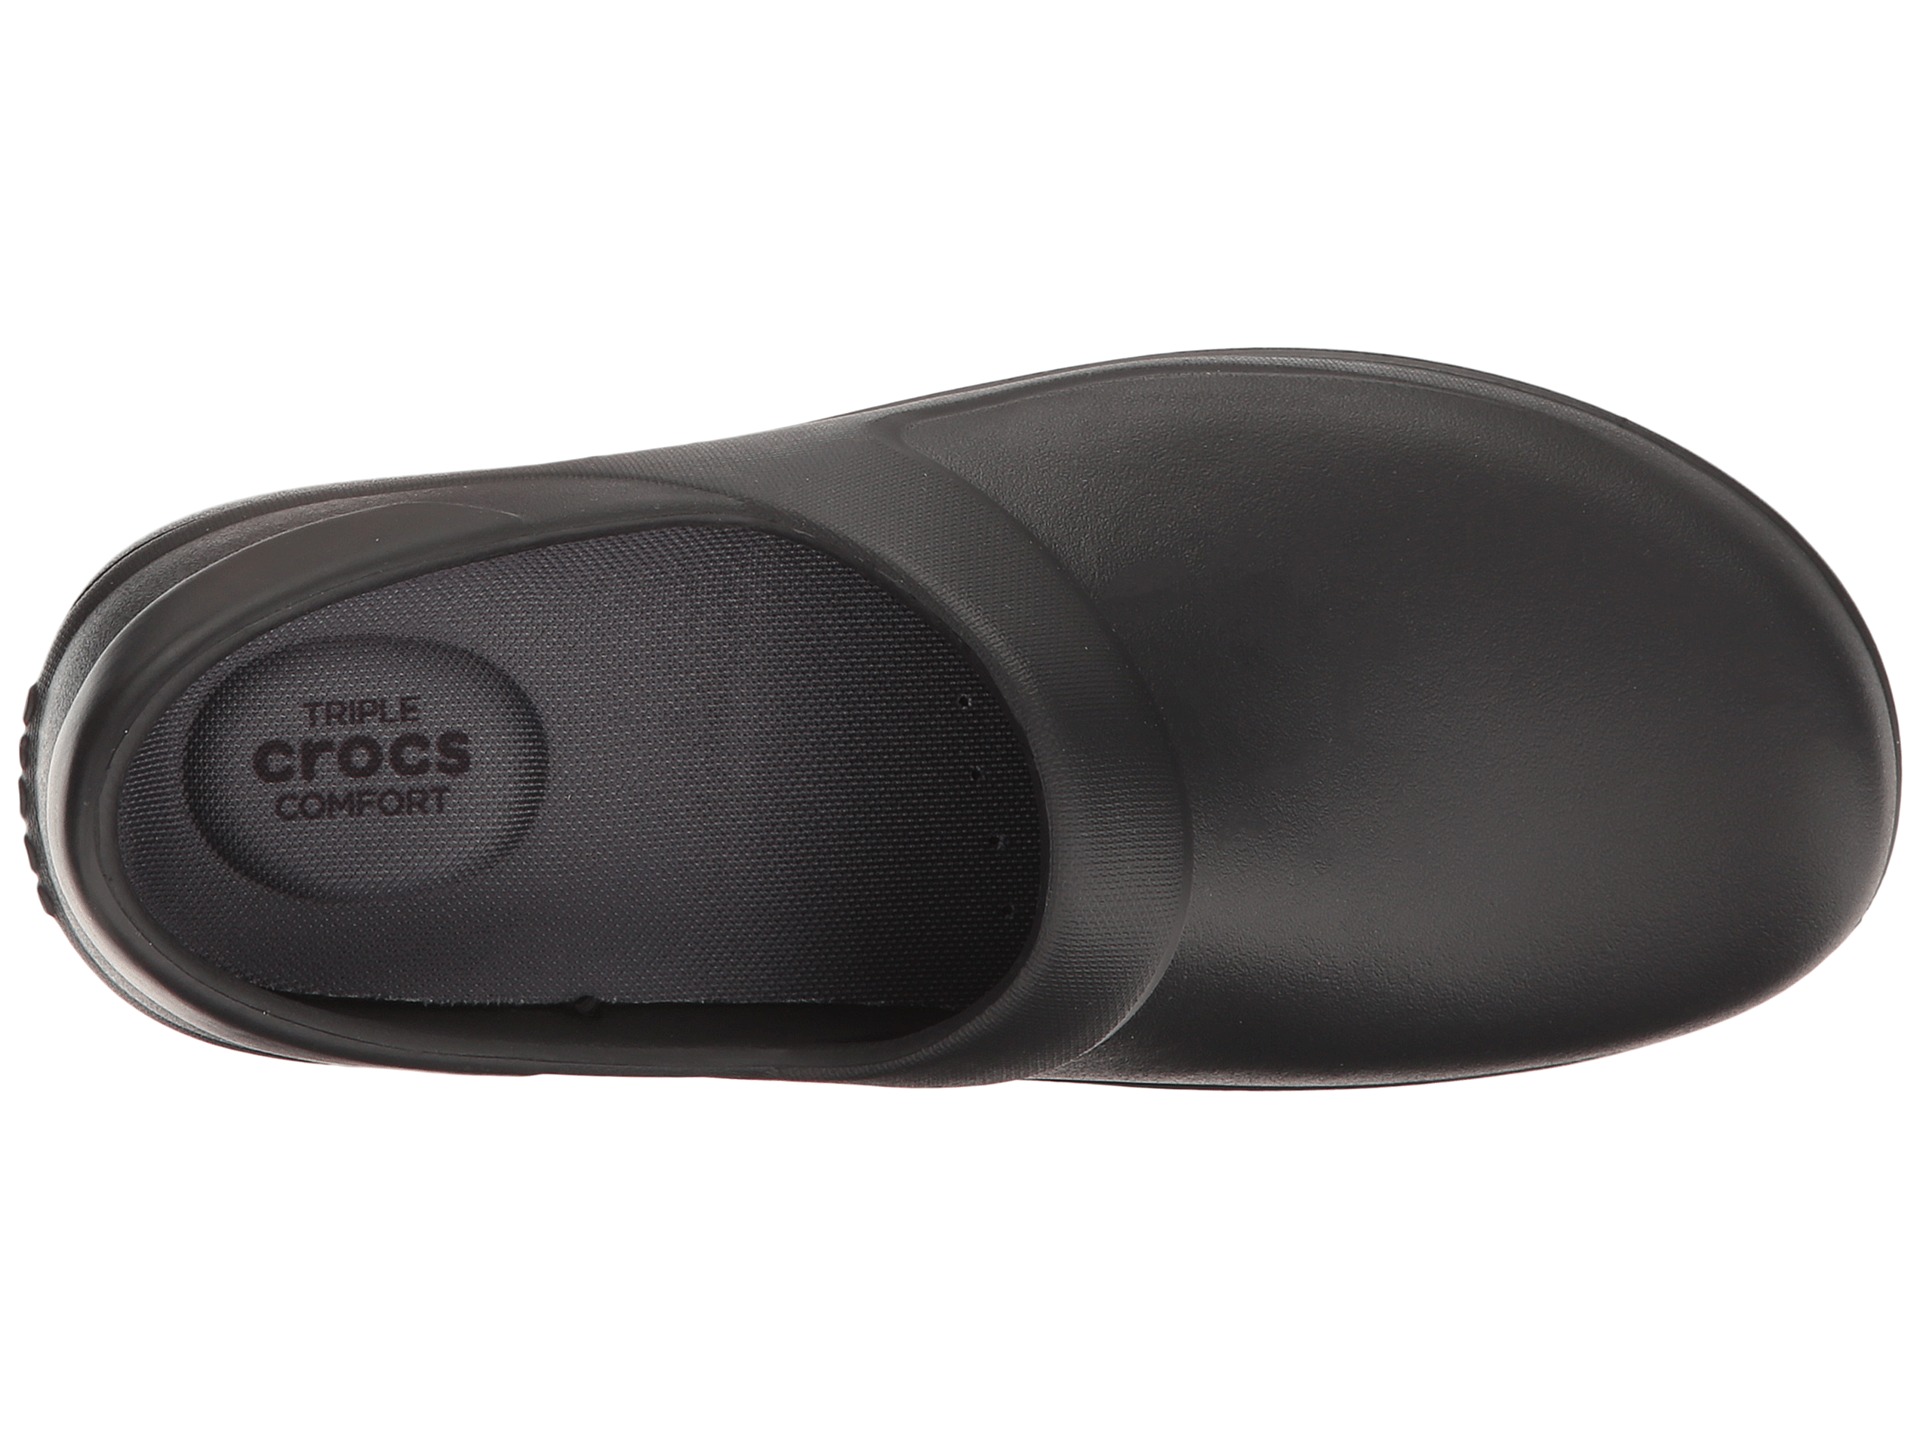 Crocs Neria Pro Clog at Zappos.com